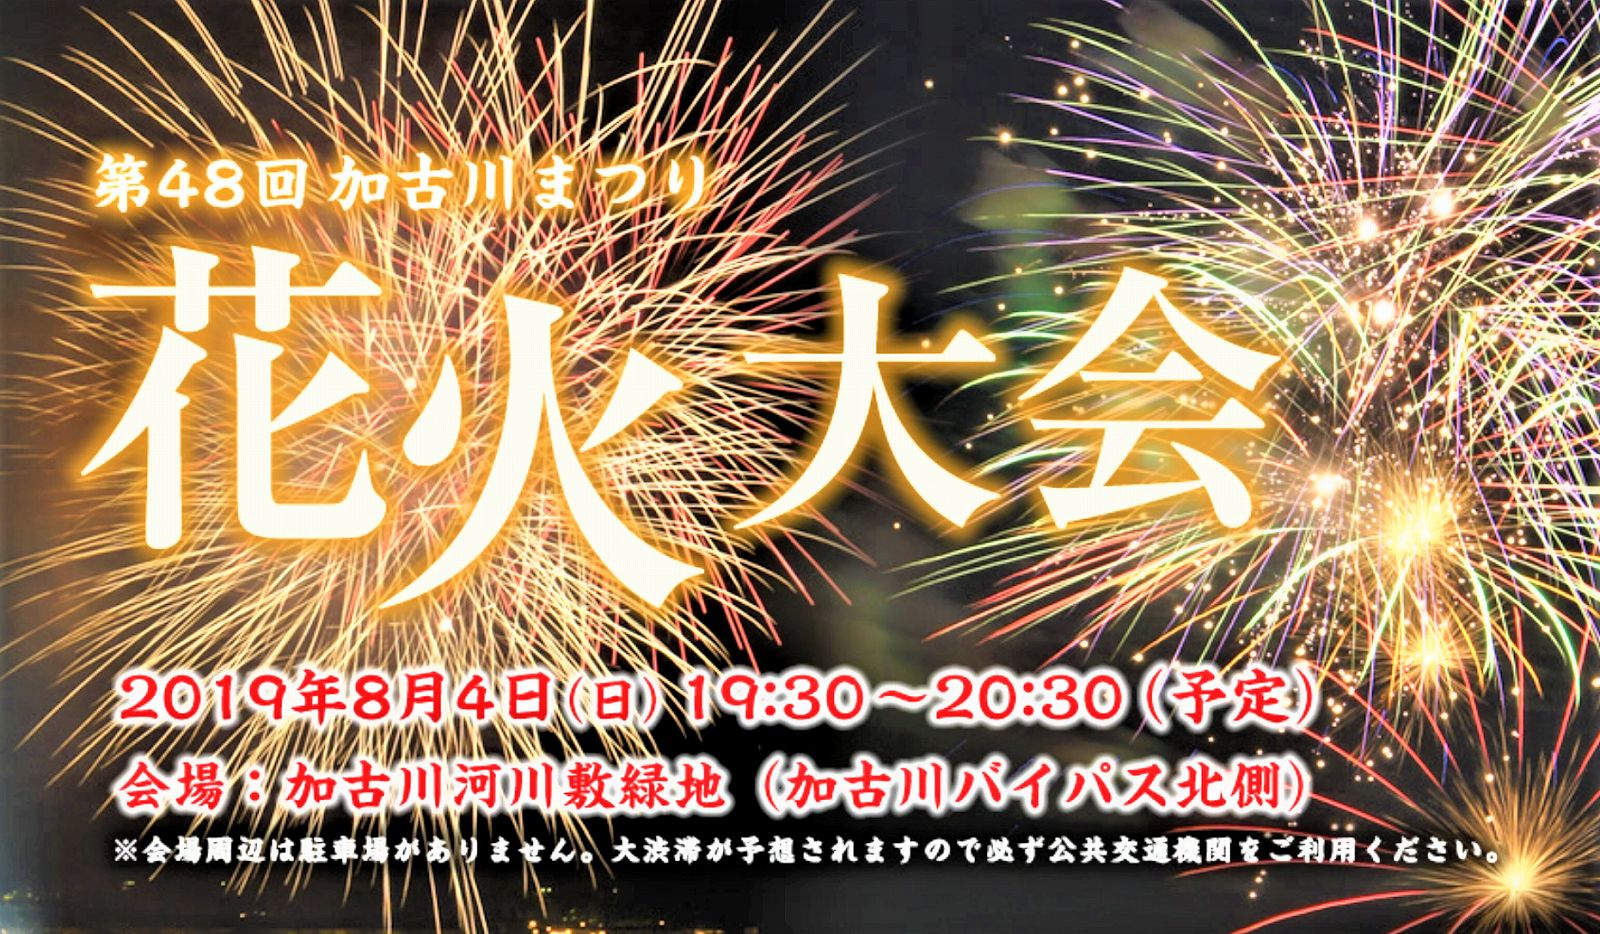 第48回加古川まつり花火大会が8月4日日に開催されるよ 加古川